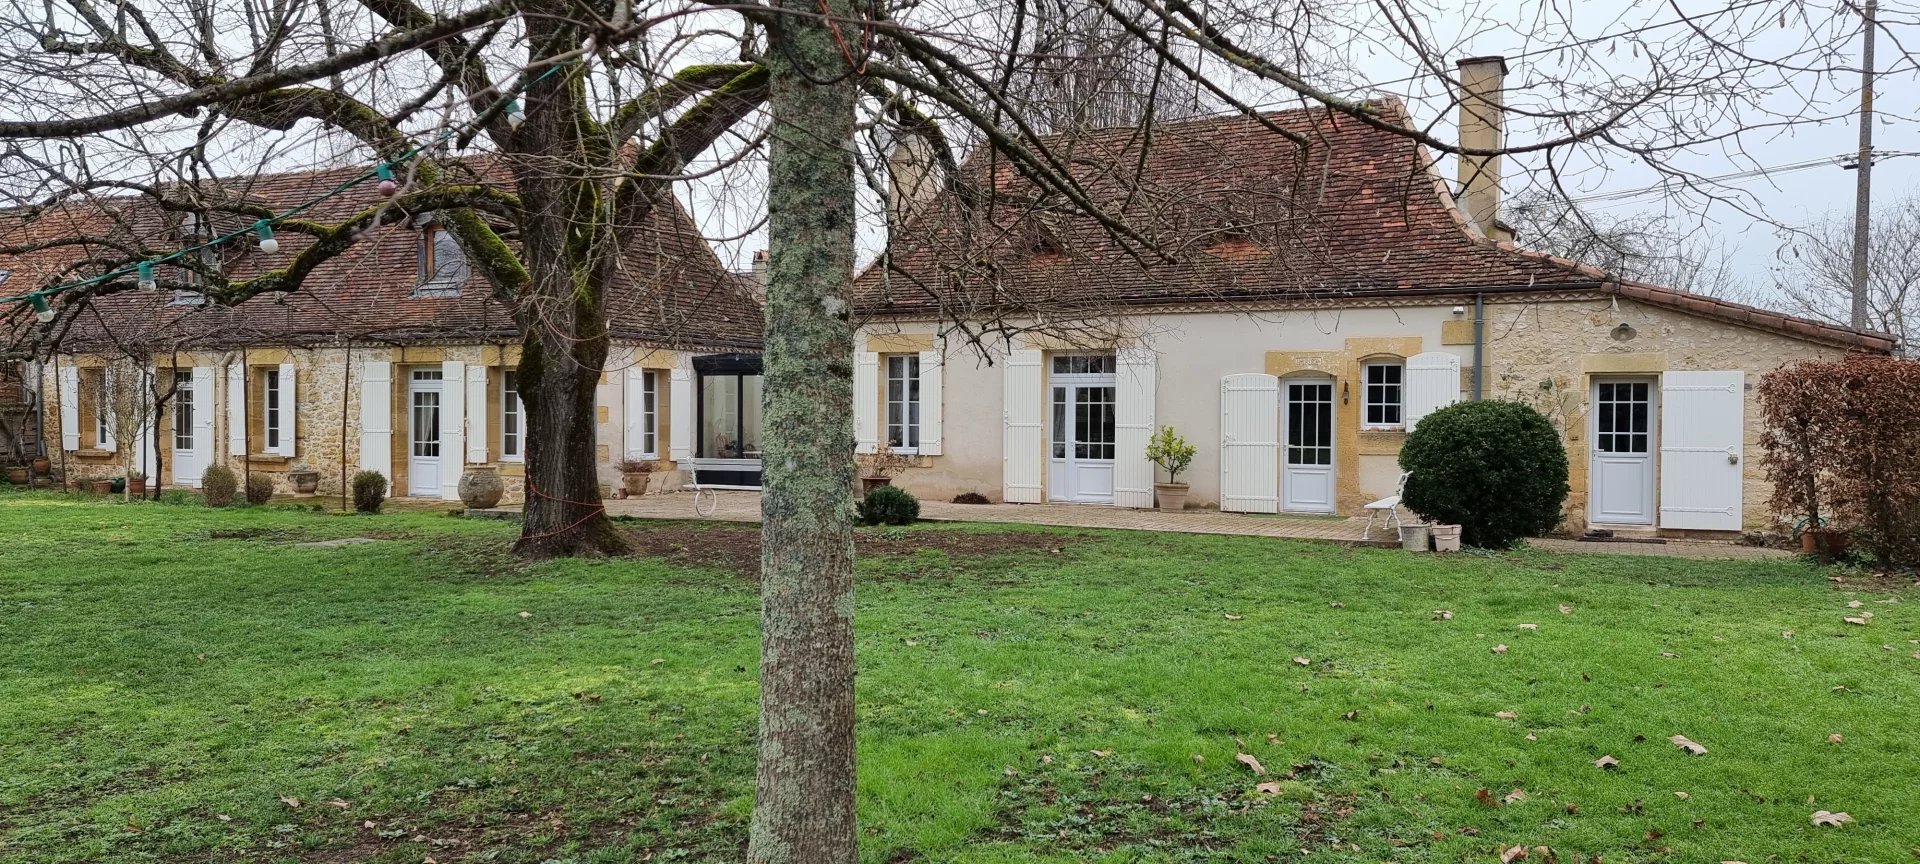 Double maison Périgourdine en pierres  XIX ème siècle  sur 1.2HA 387 m